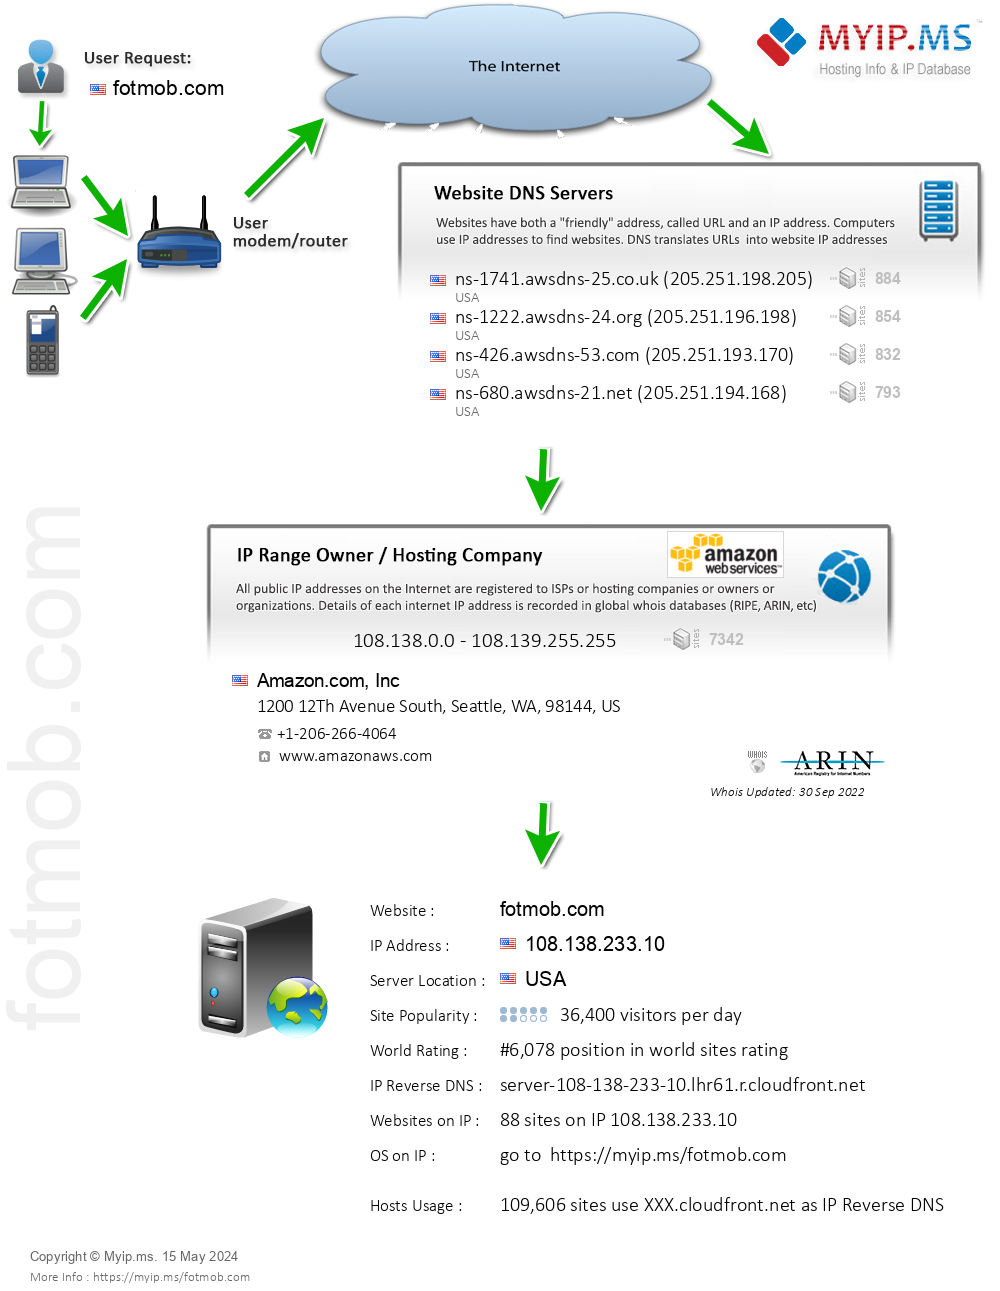 Fotmob.com - Website Hosting Visual IP Diagram